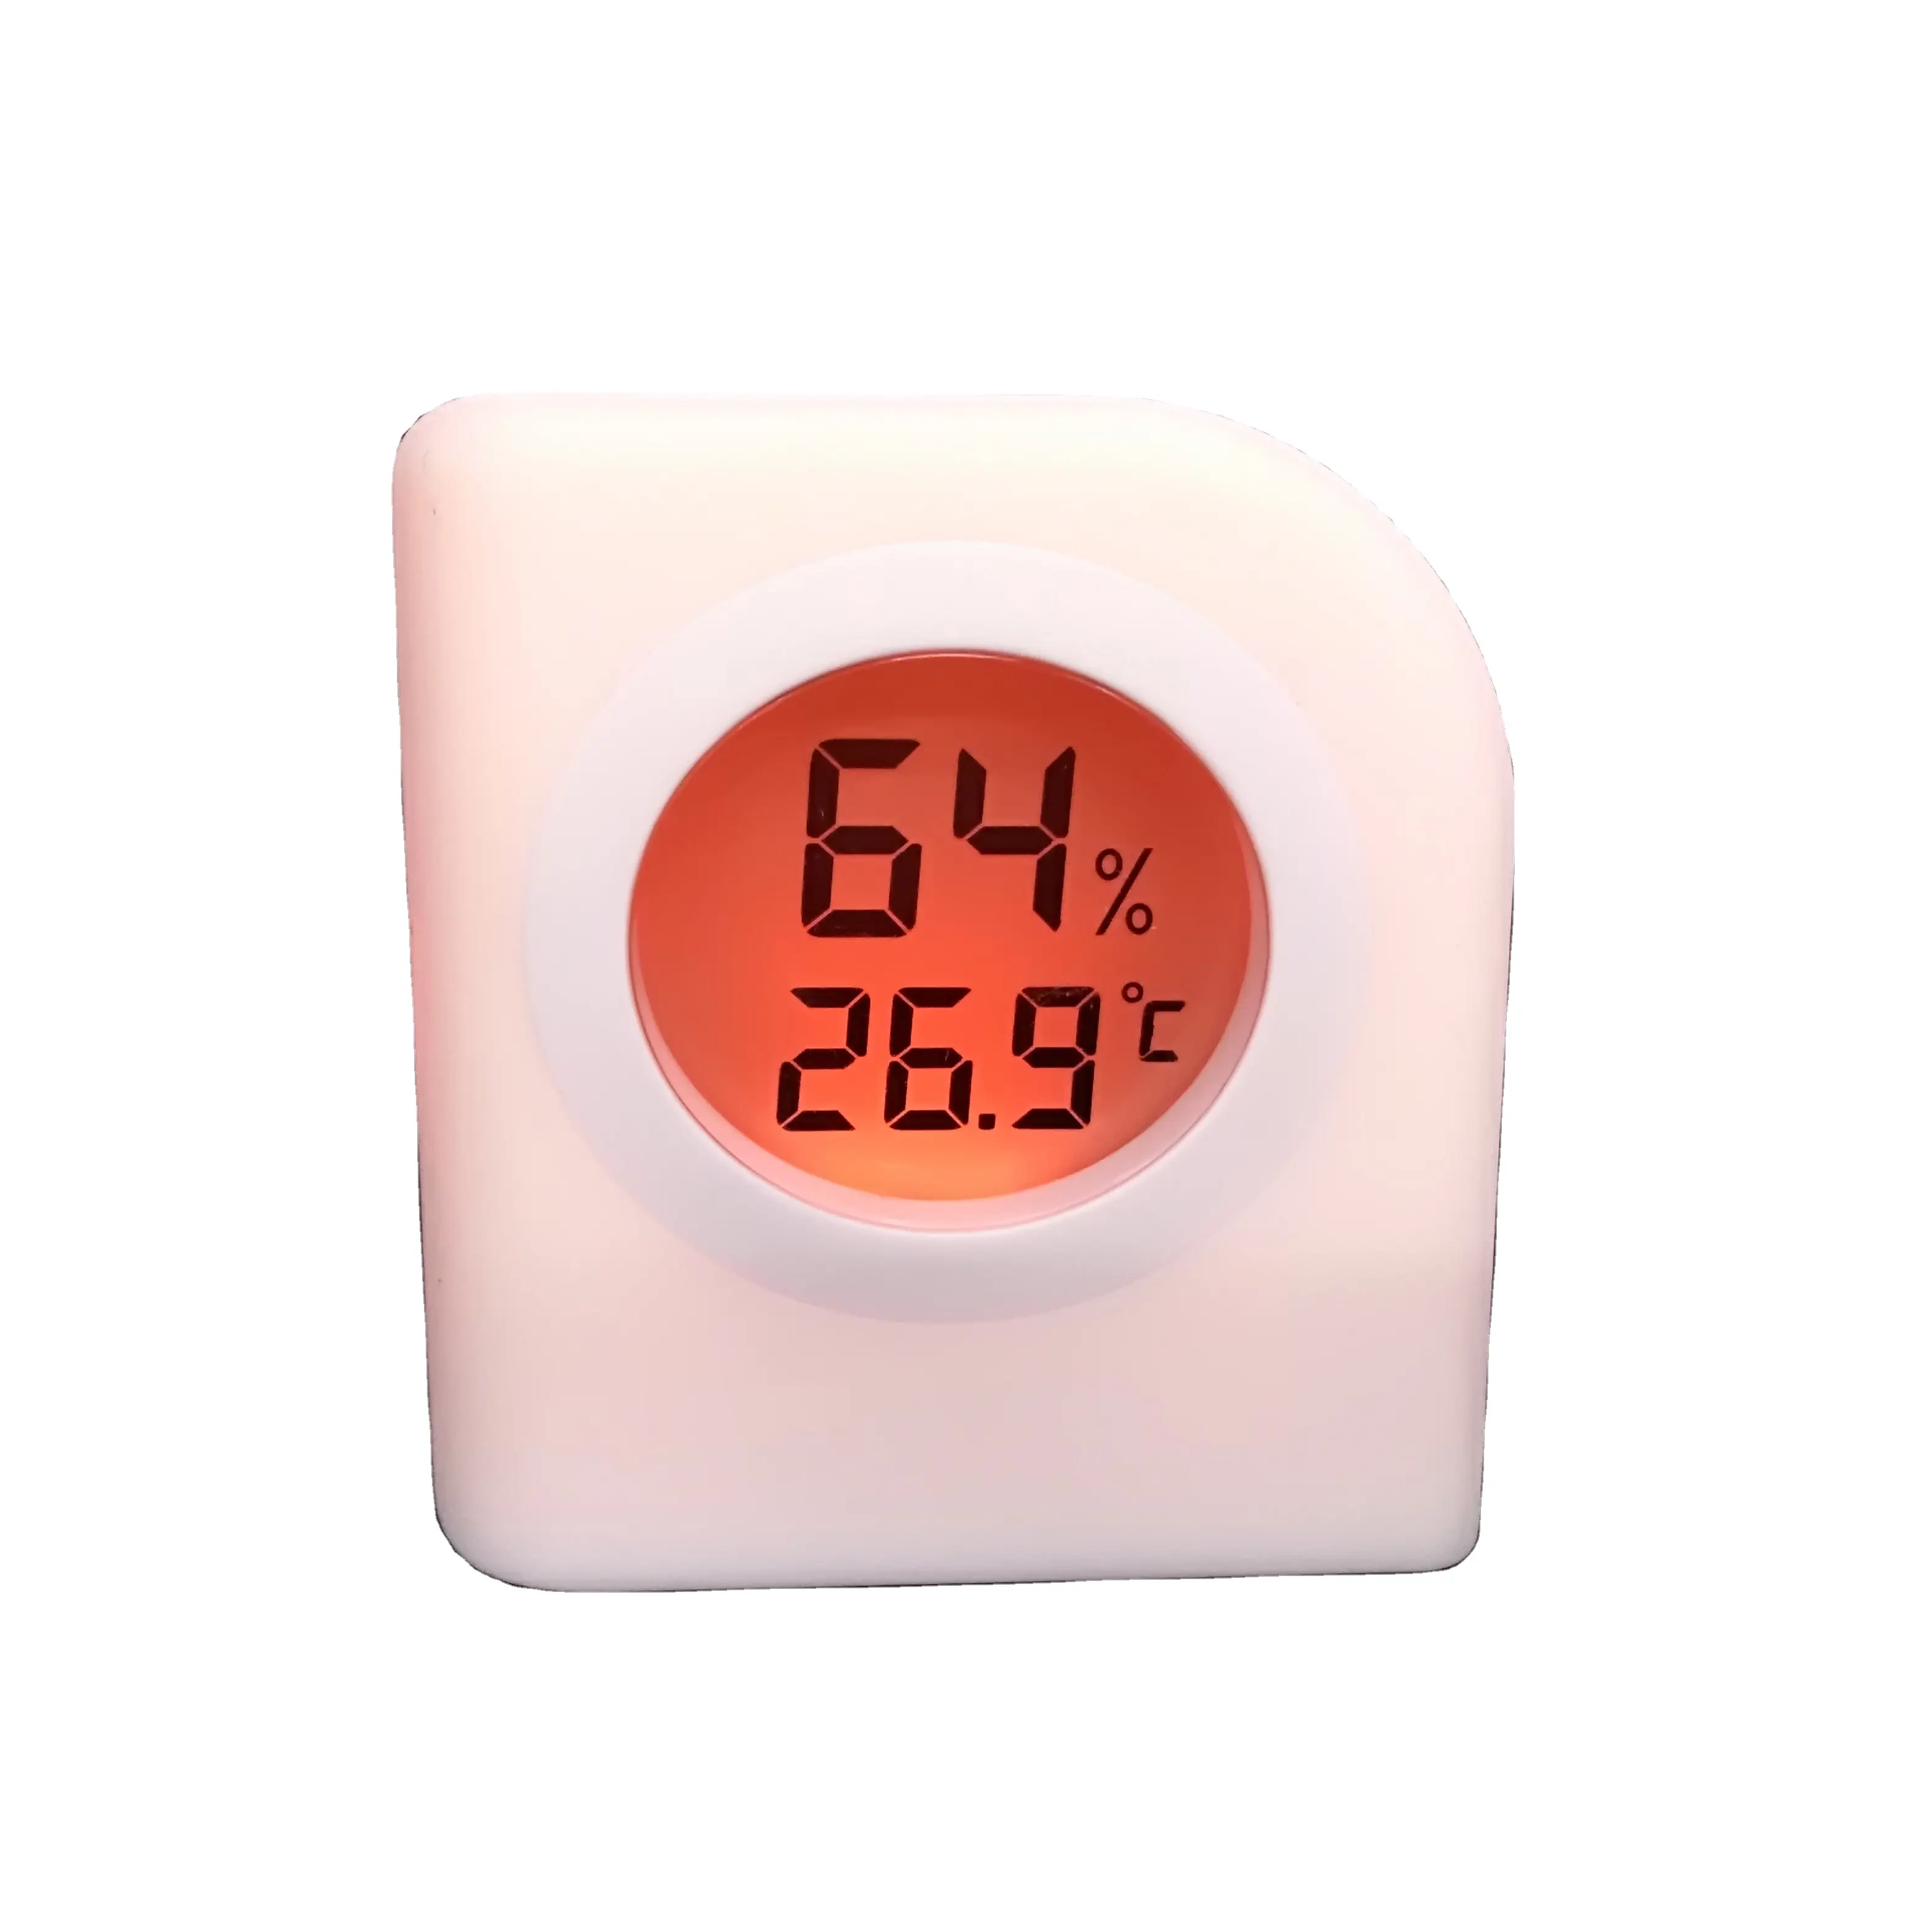 Termoigrometro per cameretta di vendita calda che cambia il colore della lampada in base alla temperatura